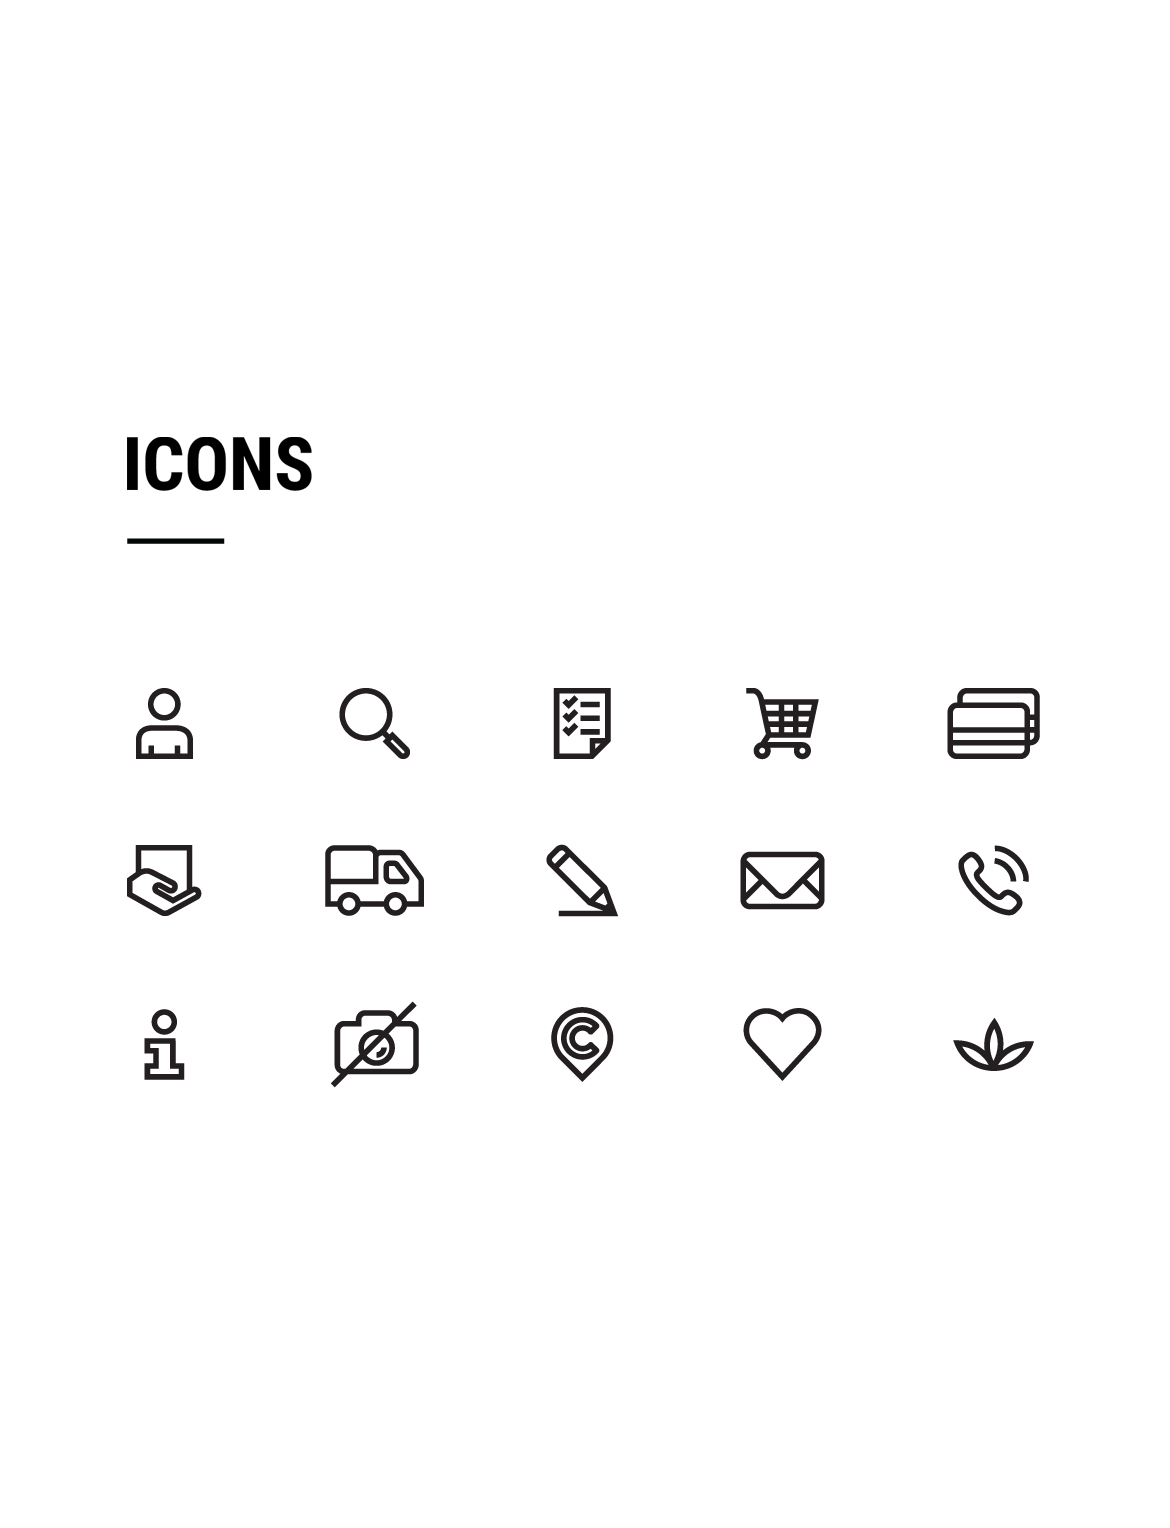 cretea icons